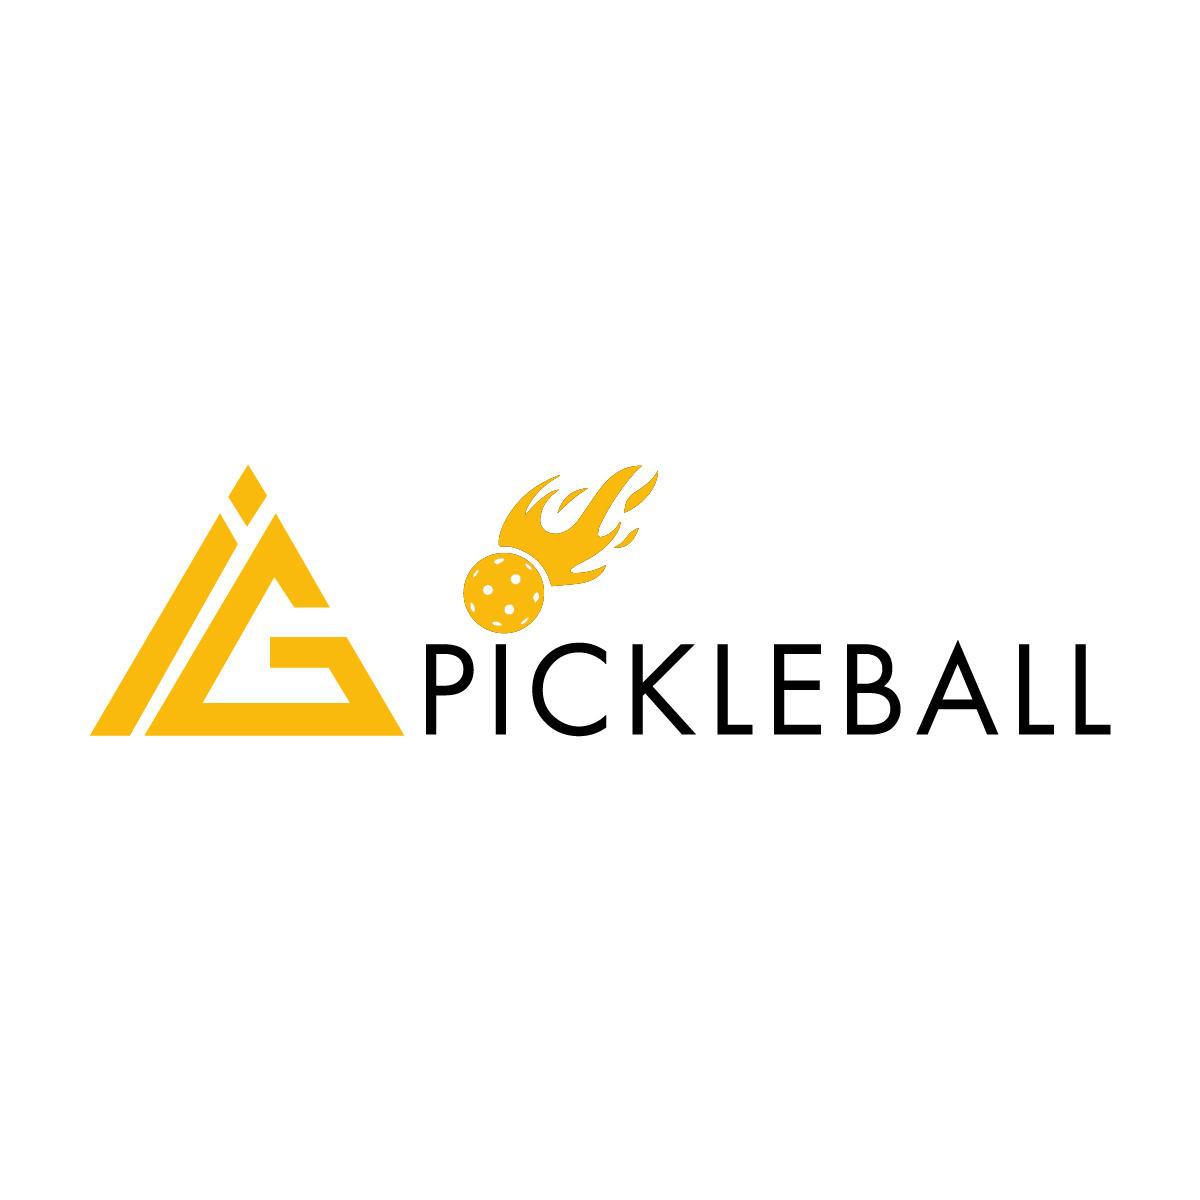 Pickleball Lessons with Coach Igor - Port Richey, FL 34668 - (813)444-7930 | ShowMeLocal.com